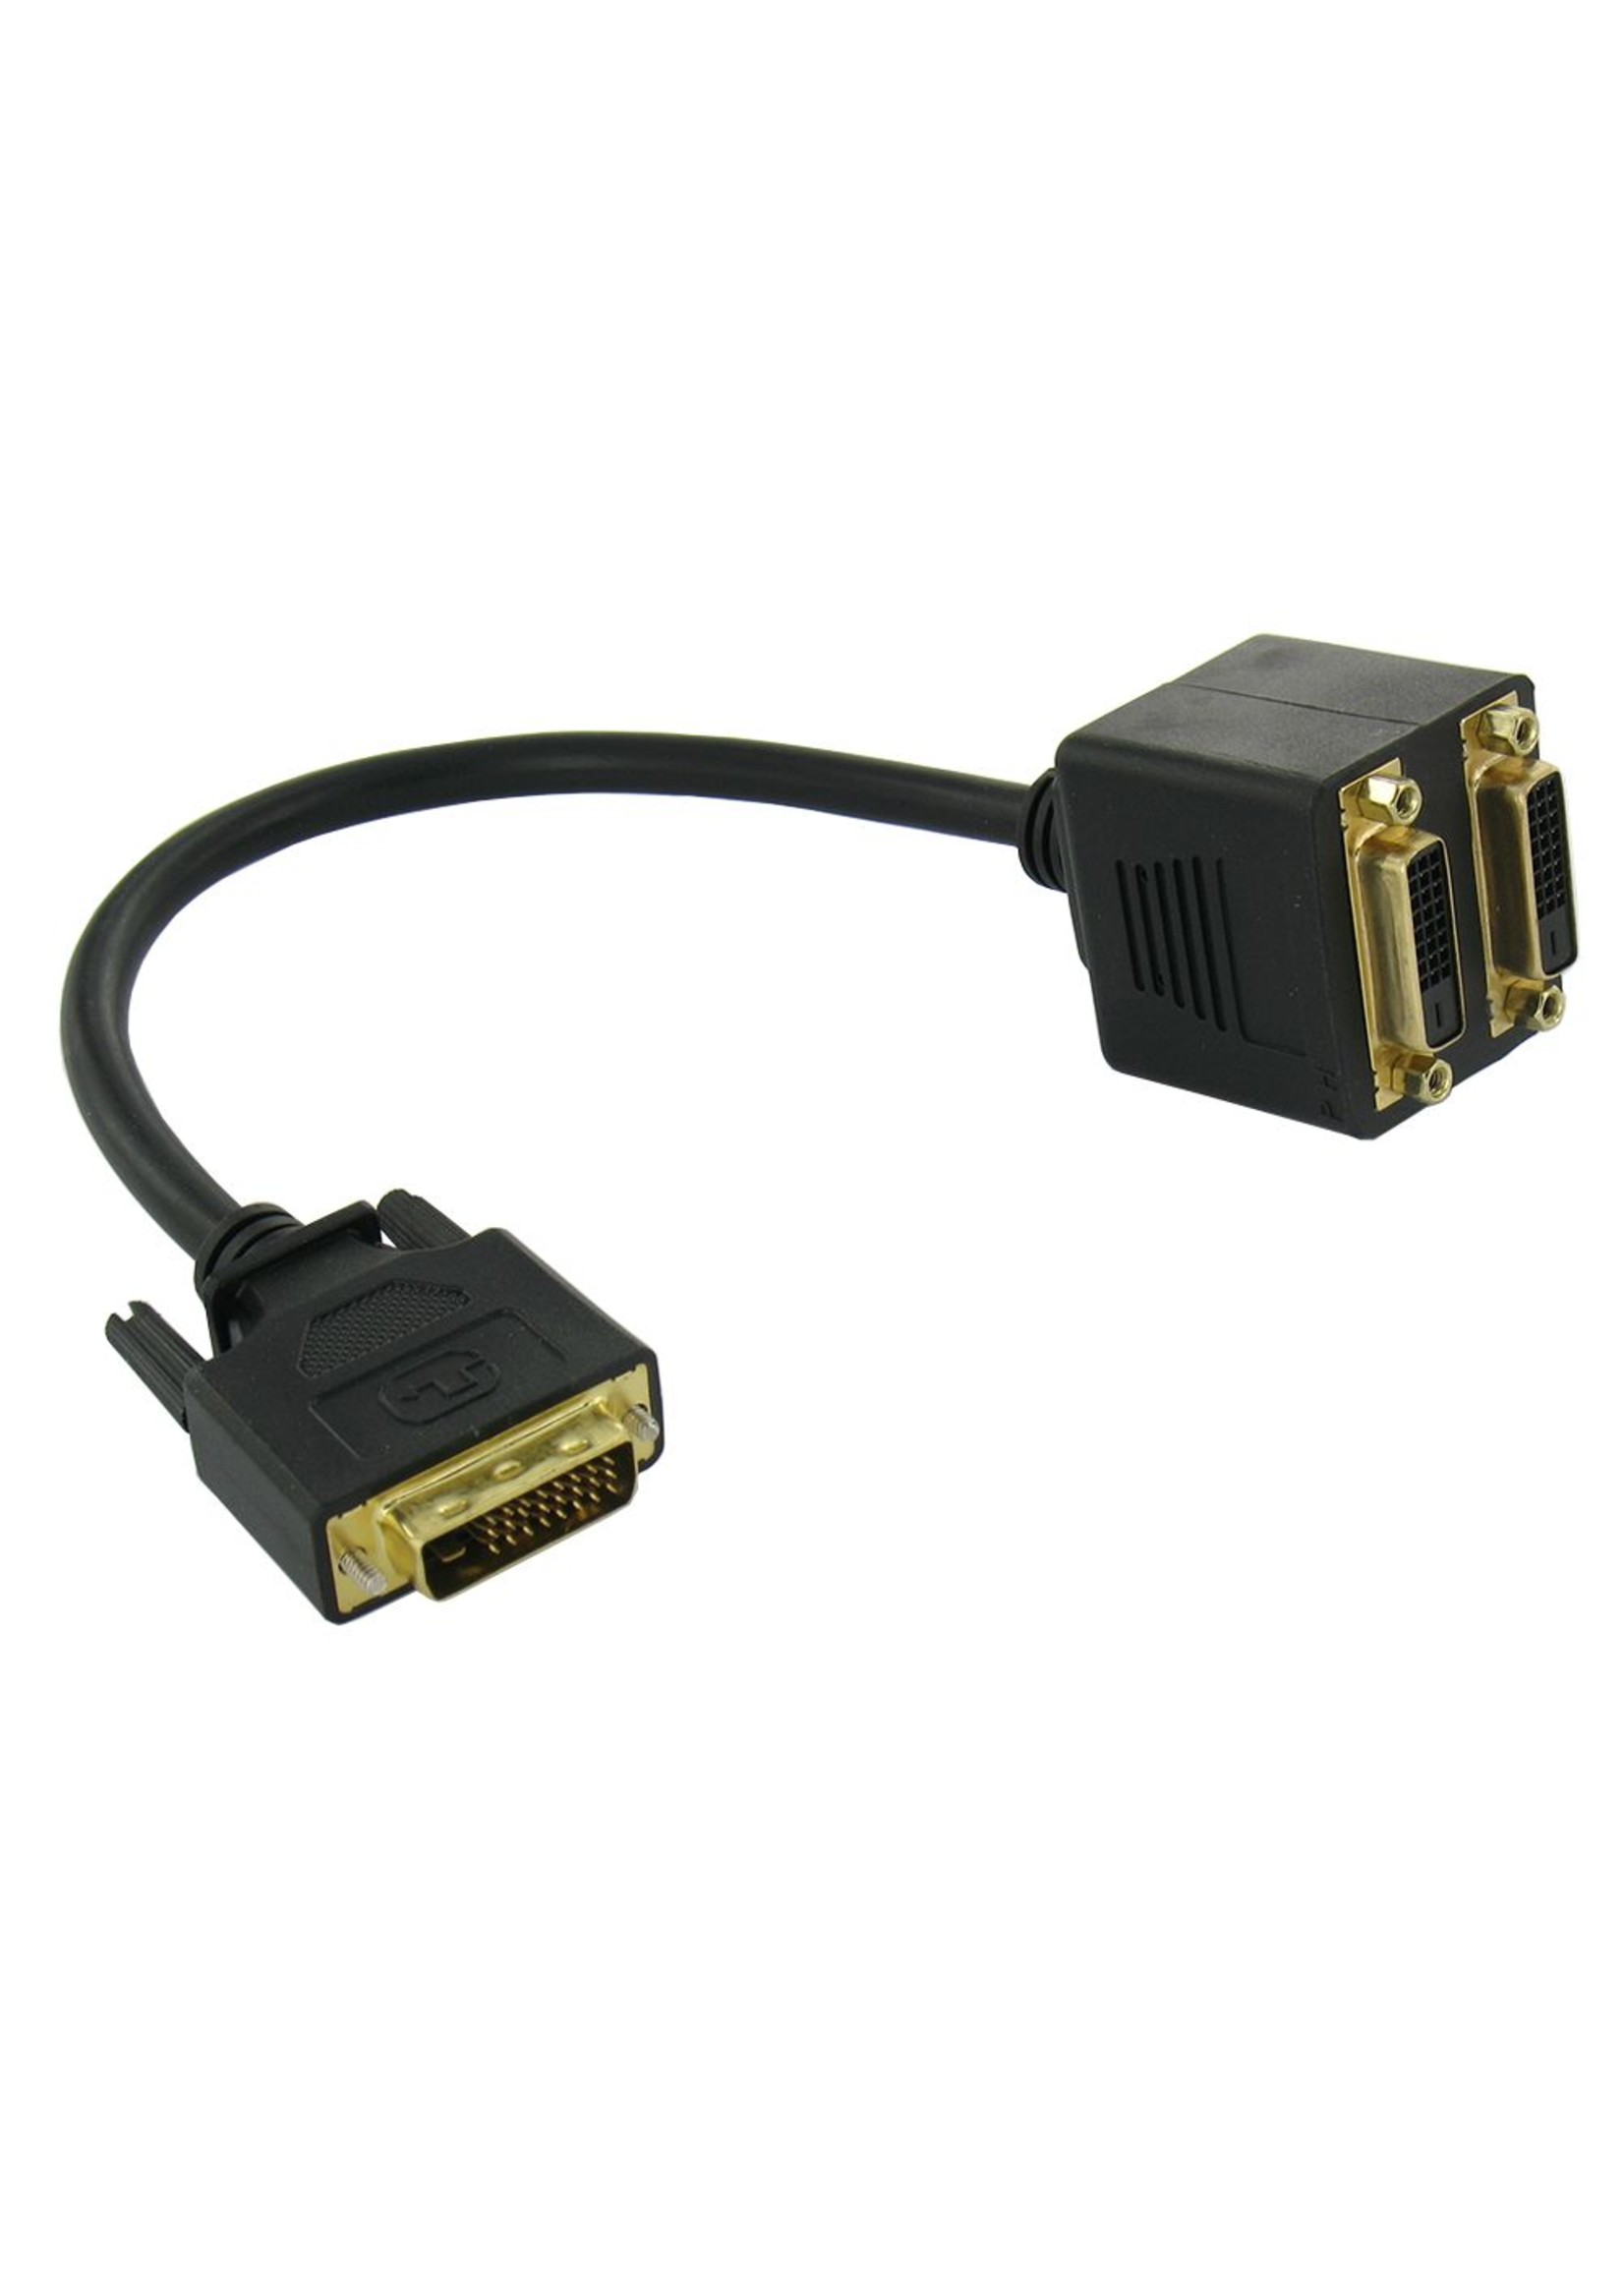 DVI-D Dual Link 24 + 1 Splitter Adapter